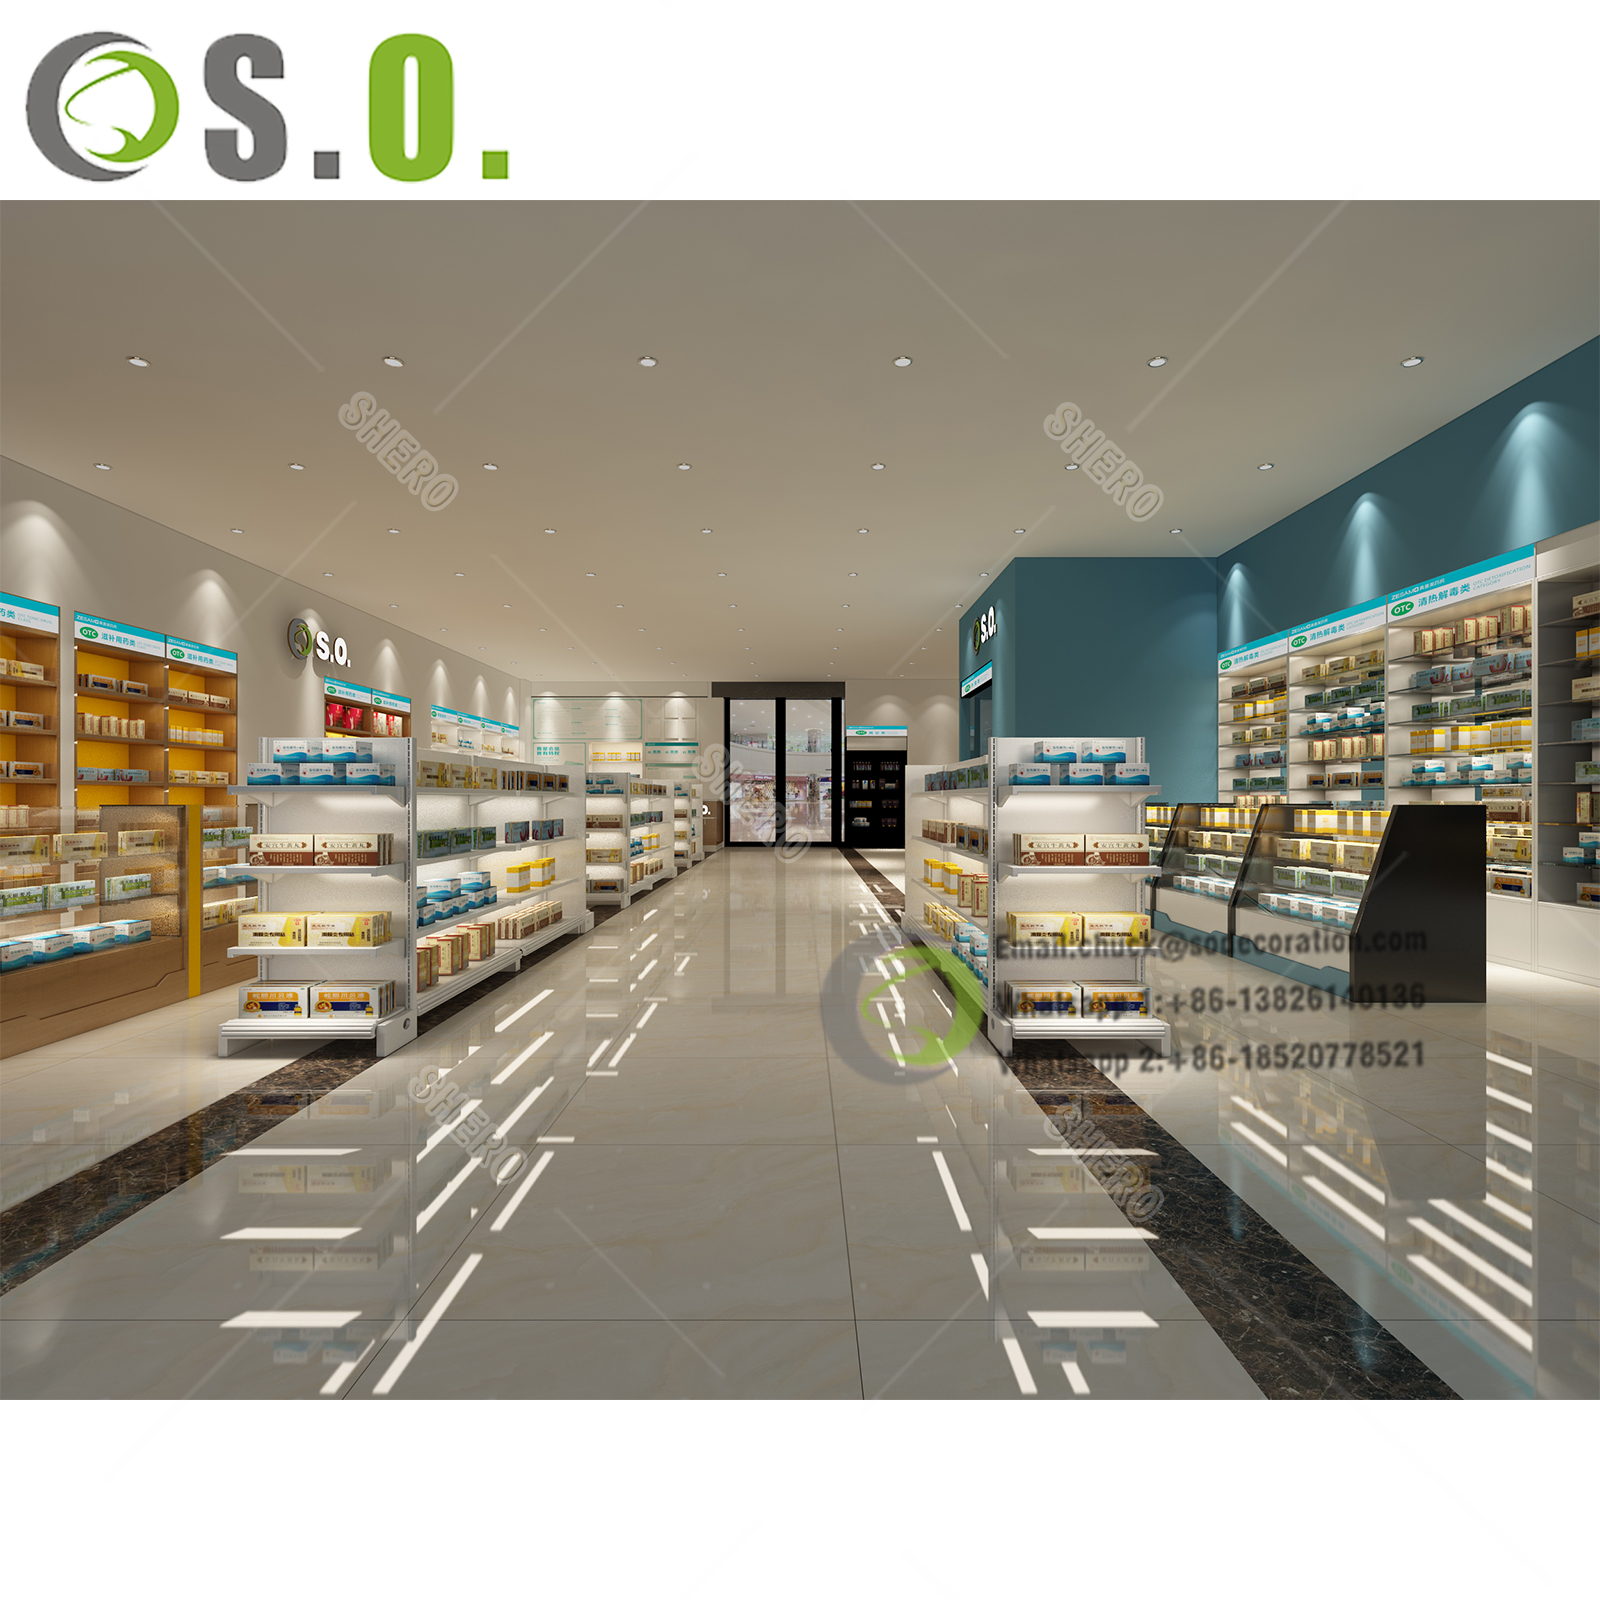 SHERO detaljhandel medisinsk butikk interiørdesign kryssfiner apotek utstillingsmøbler